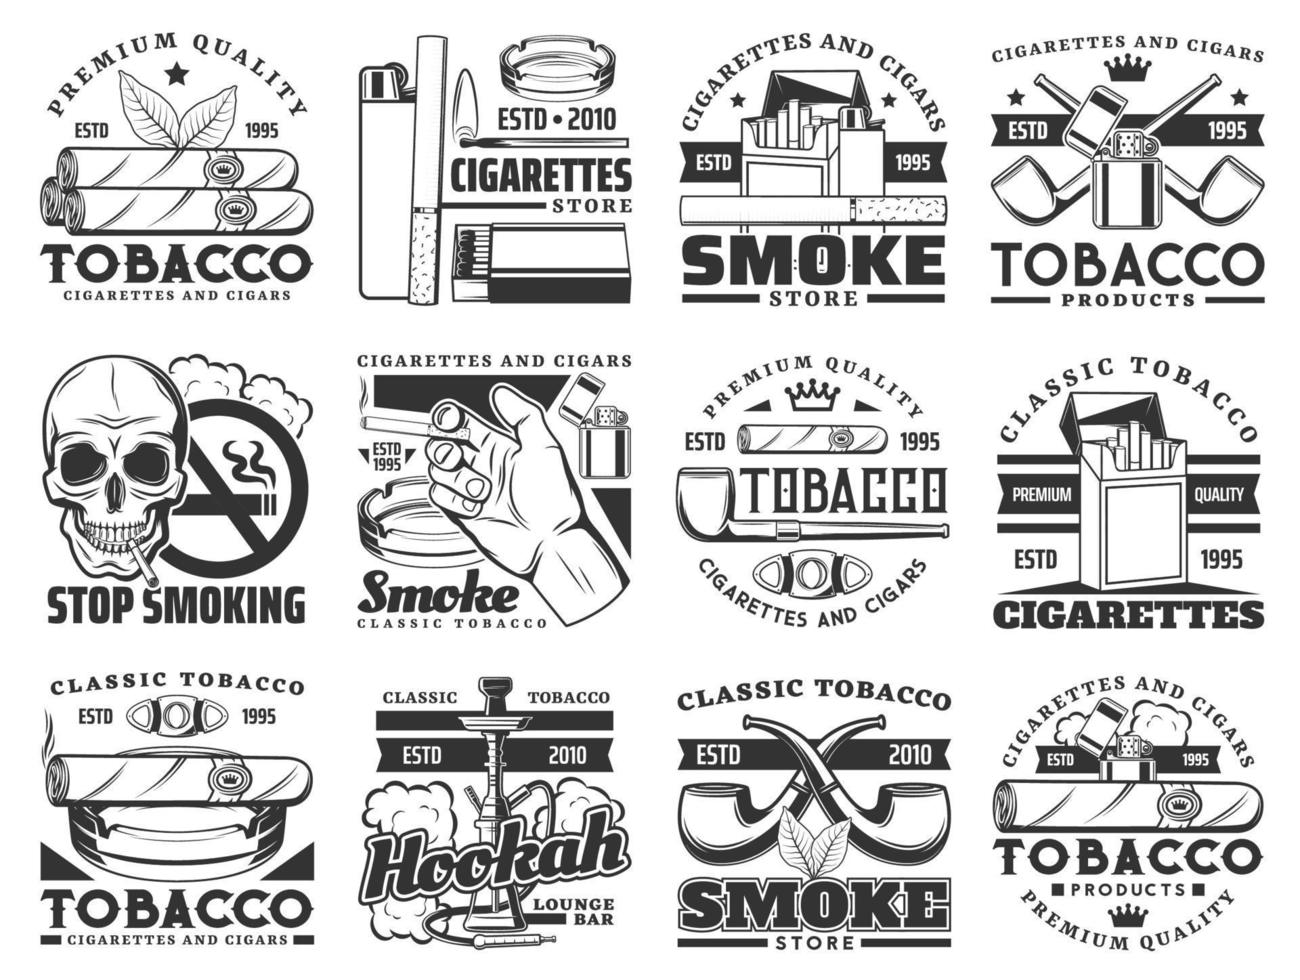 paquete de cigarrillos, cigarro, pipa, iconos de hojas de tabaco vector